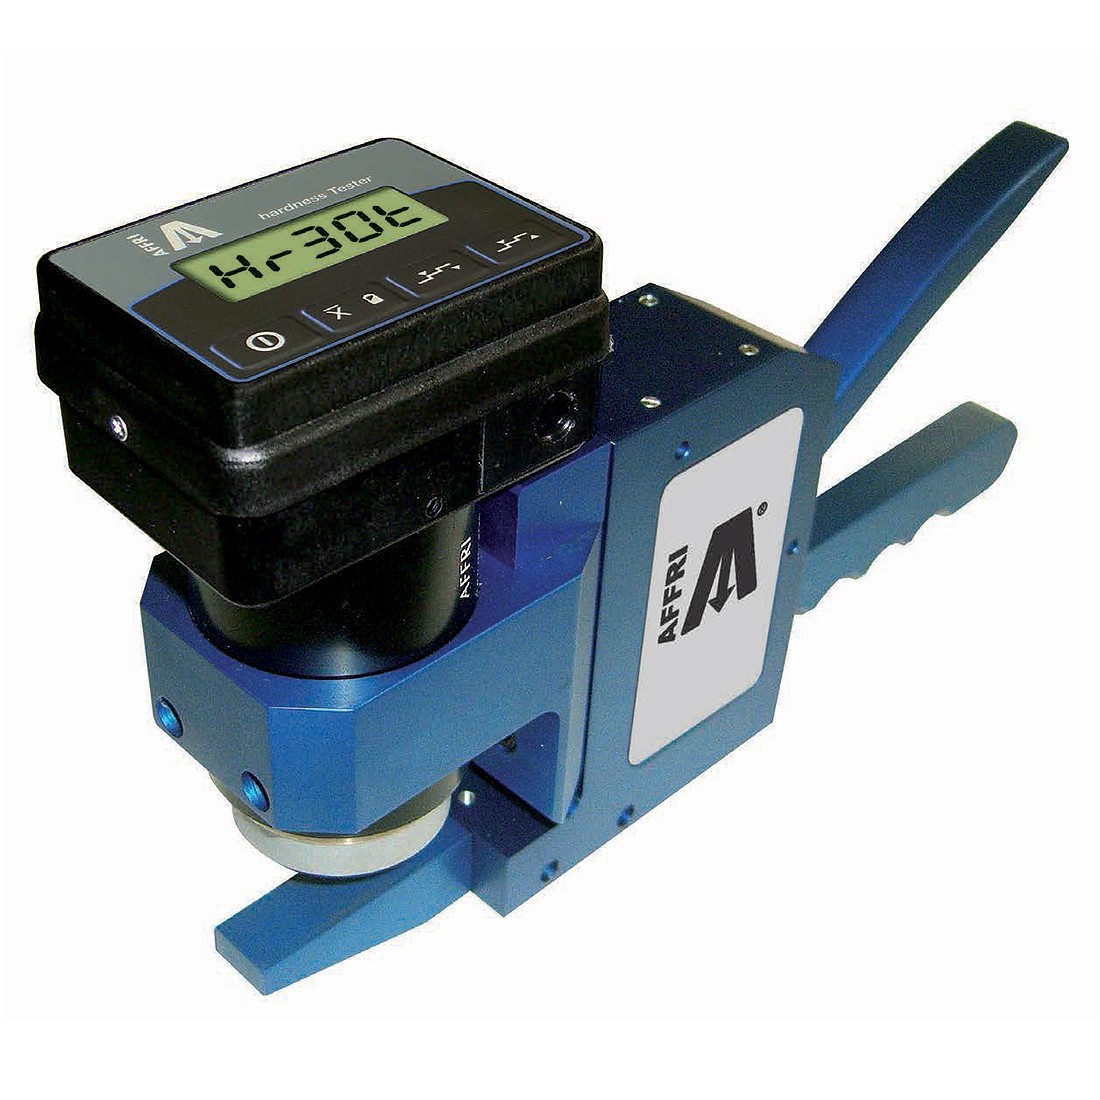 AFFRI Portable Hardness Tester METALTEST